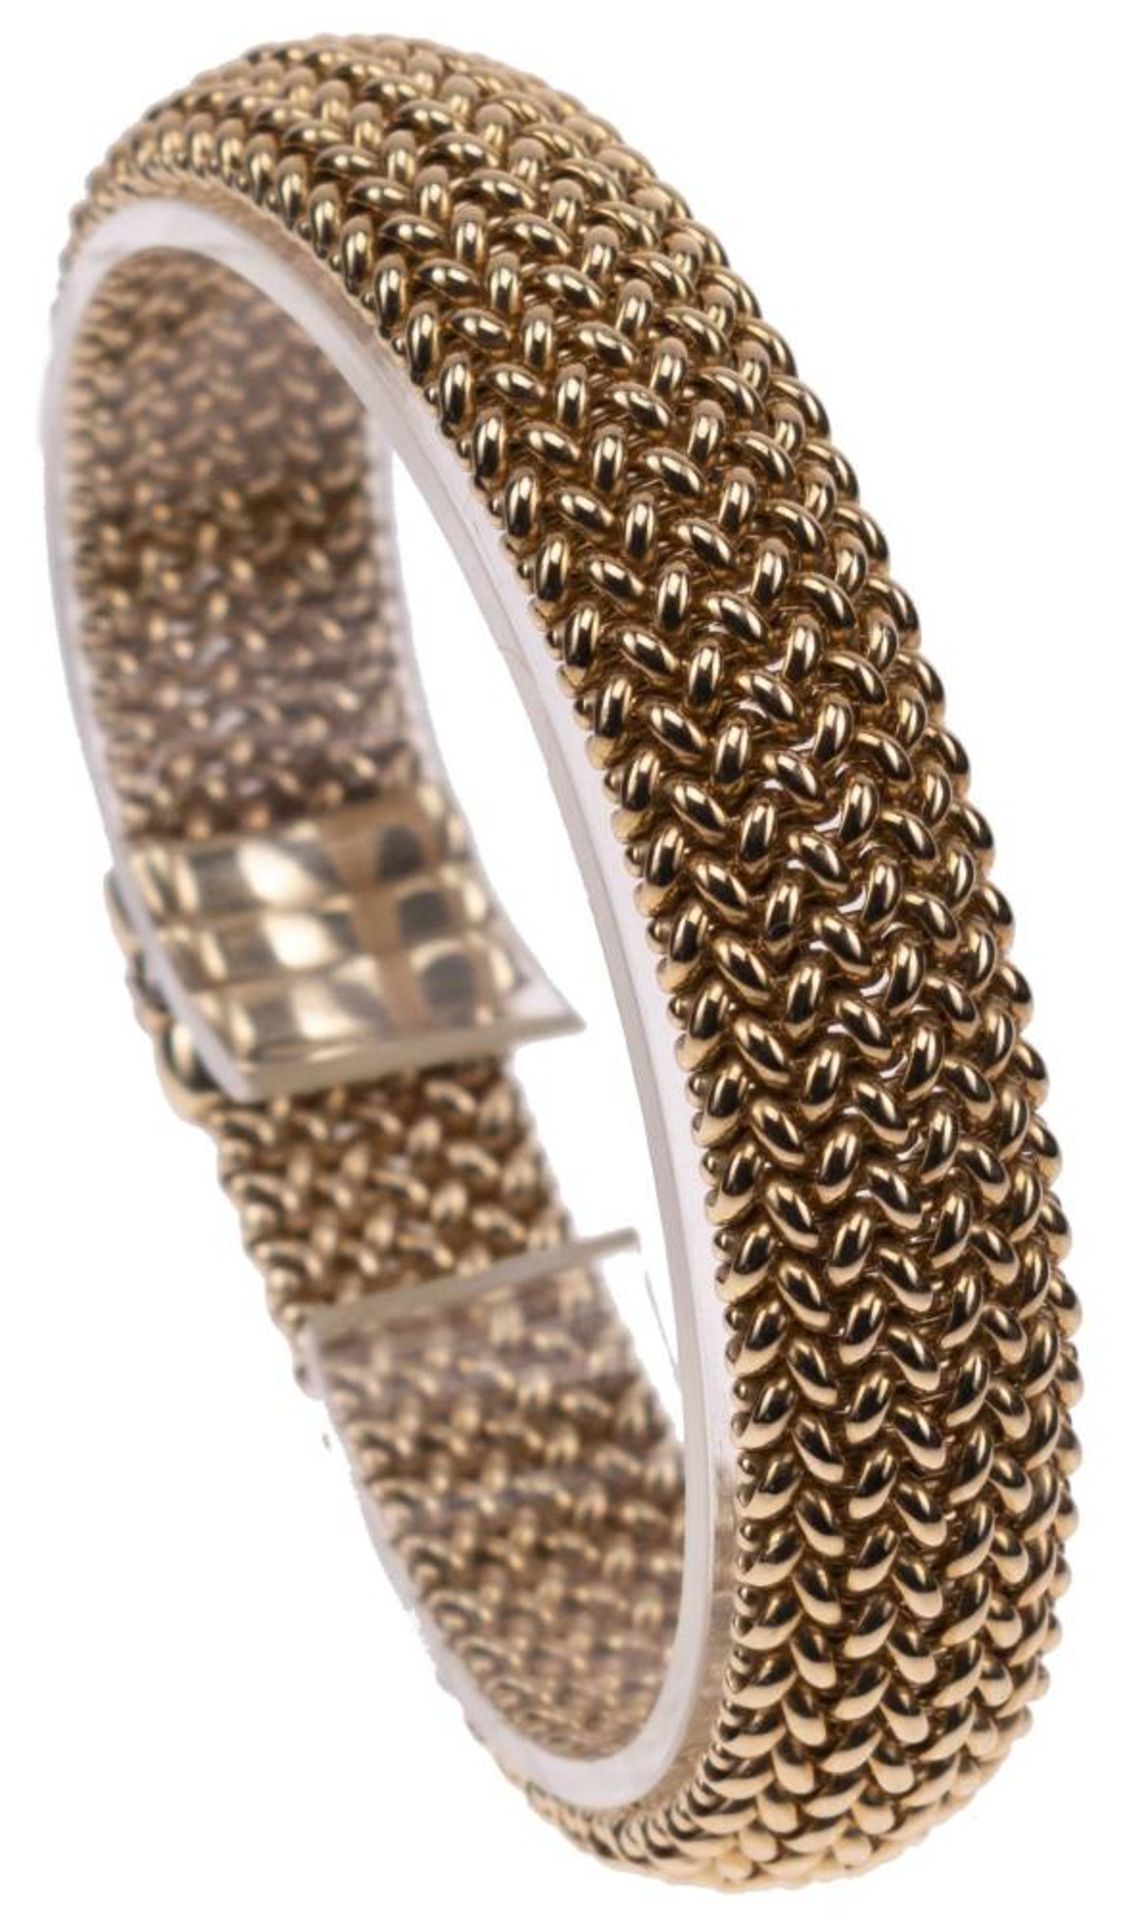 Milanaise Armband, 585 Gelbgold, Länge 19,5cm, Steckschließe mit Clipverschluss, fast ungetragen, - Bild 2 aus 6